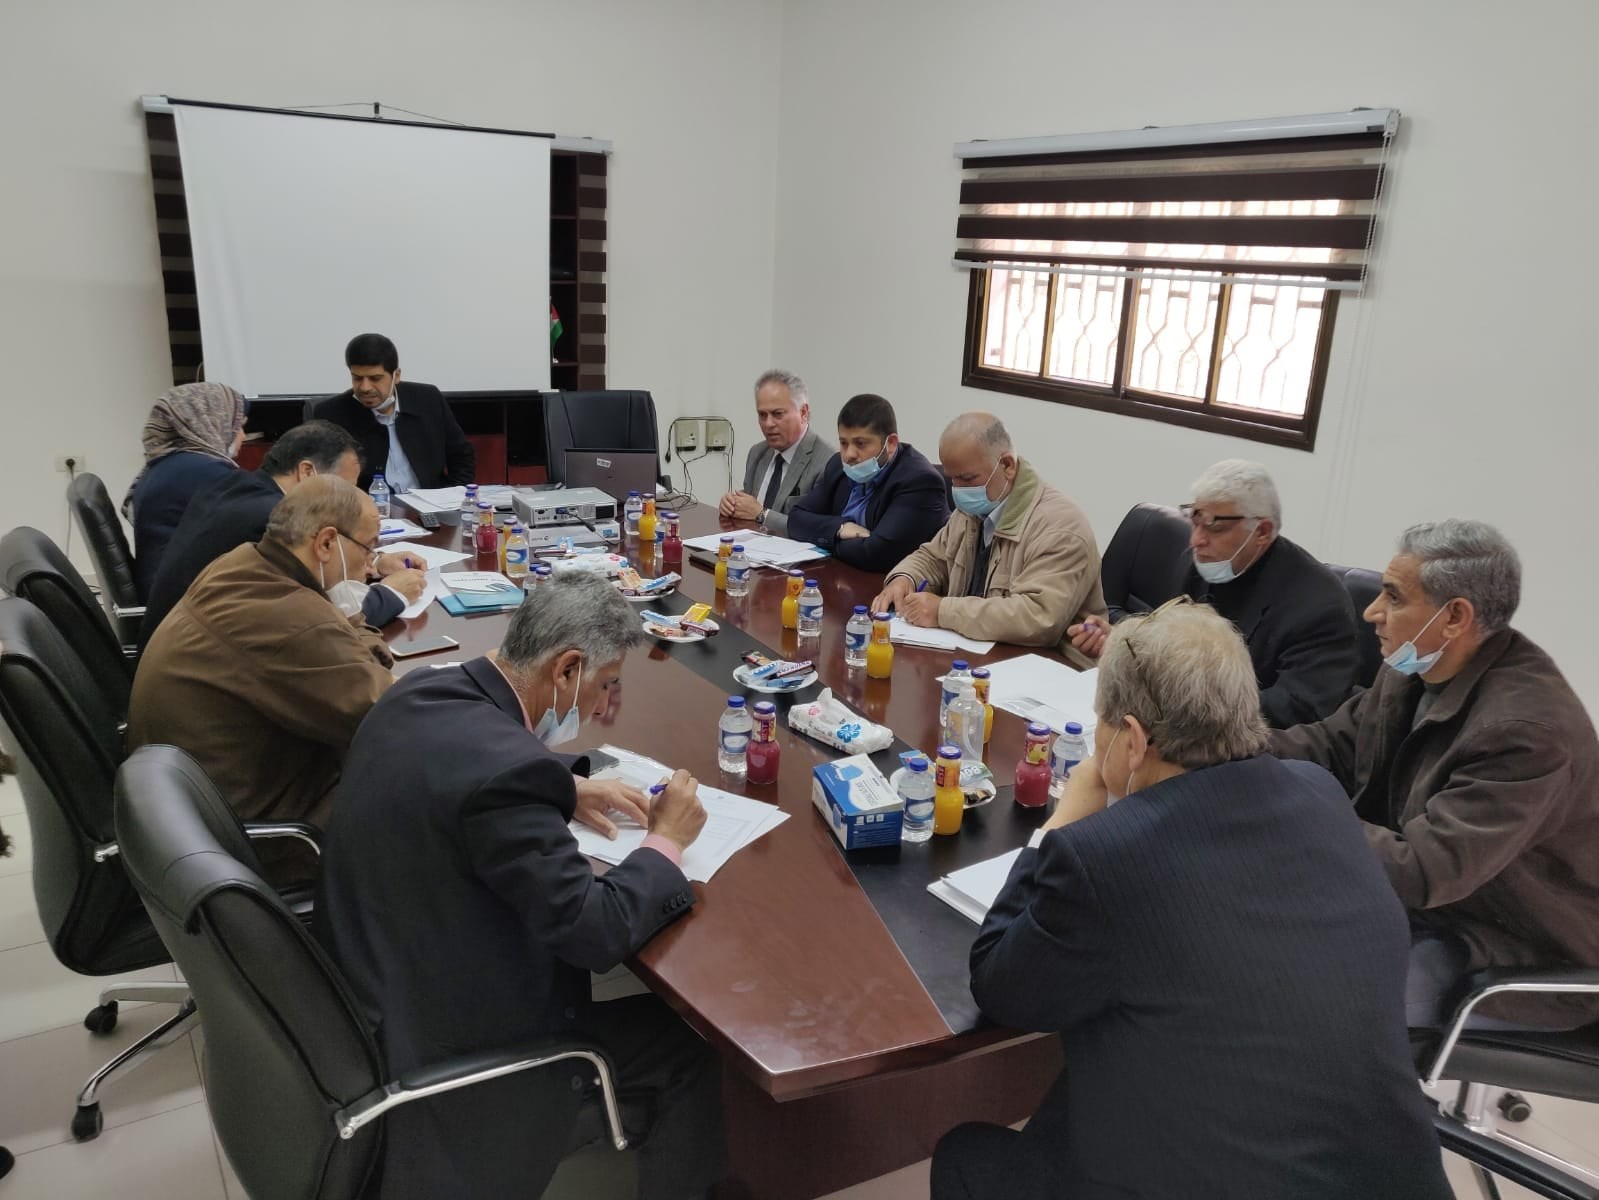 لجنة الانتخابات تطلع ممثلي الأحزاب في غزة على شروط الترشح